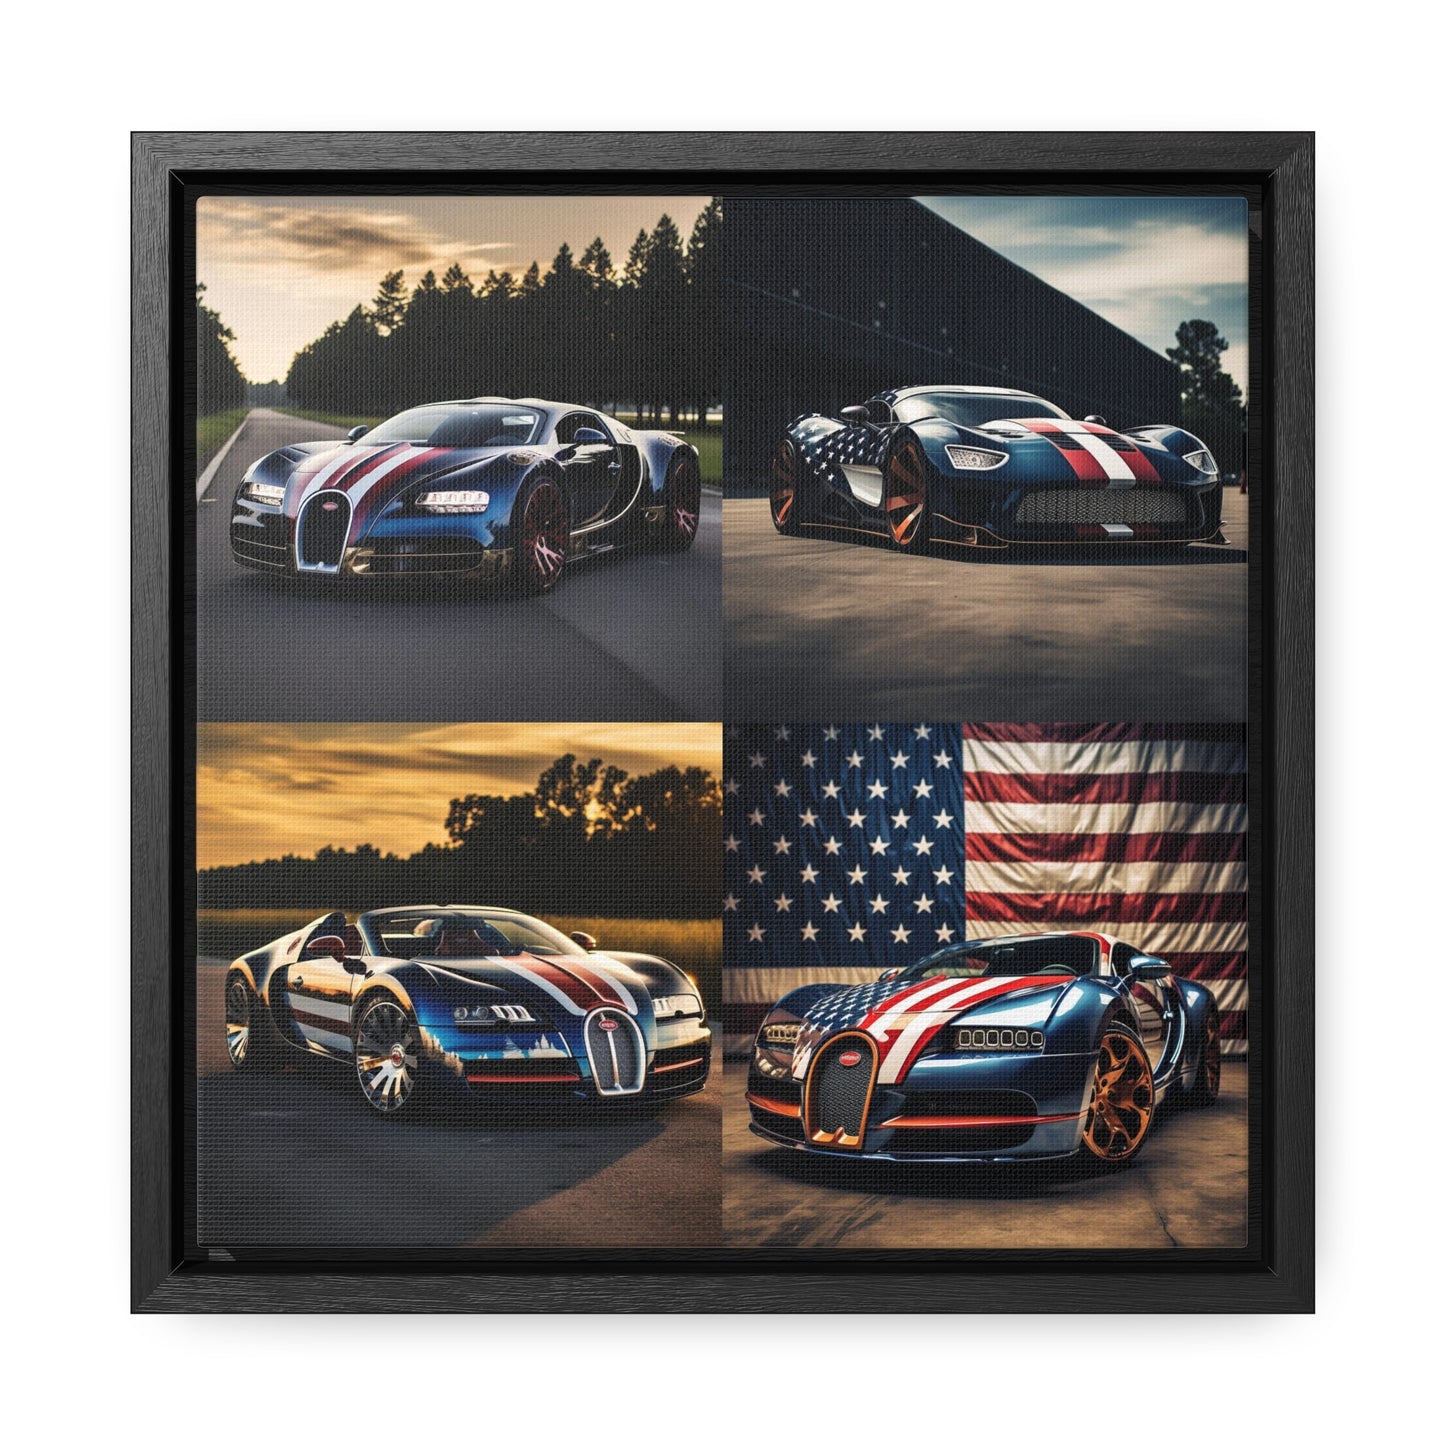 Gallery Canvas Wraps, Square Frame Bugatti Flag American 5